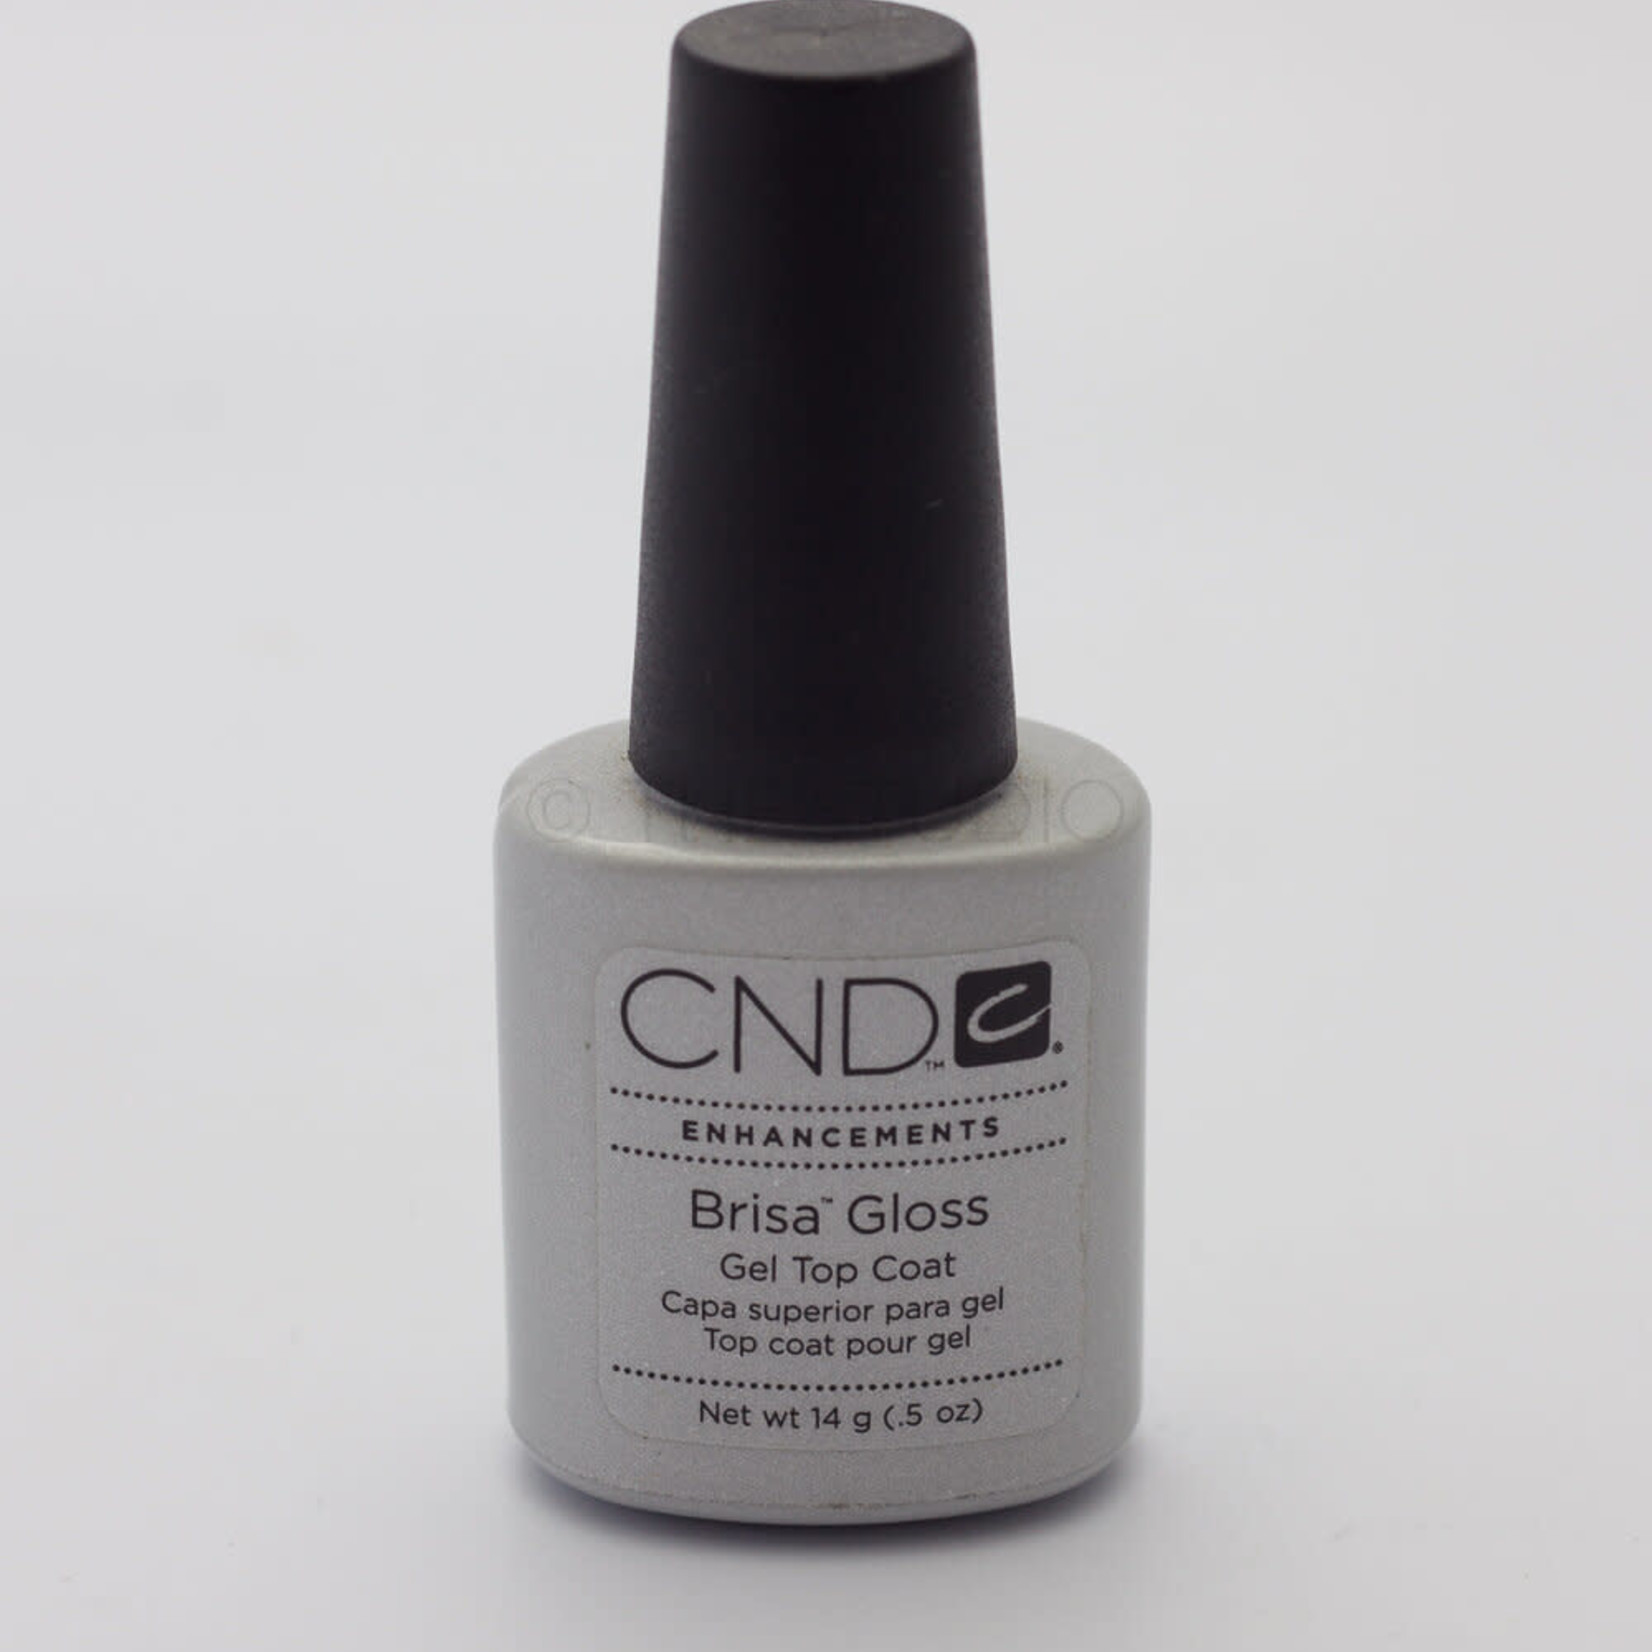 CND CND - Brisa Gloss - Gel Top Coat - 0.5 oz